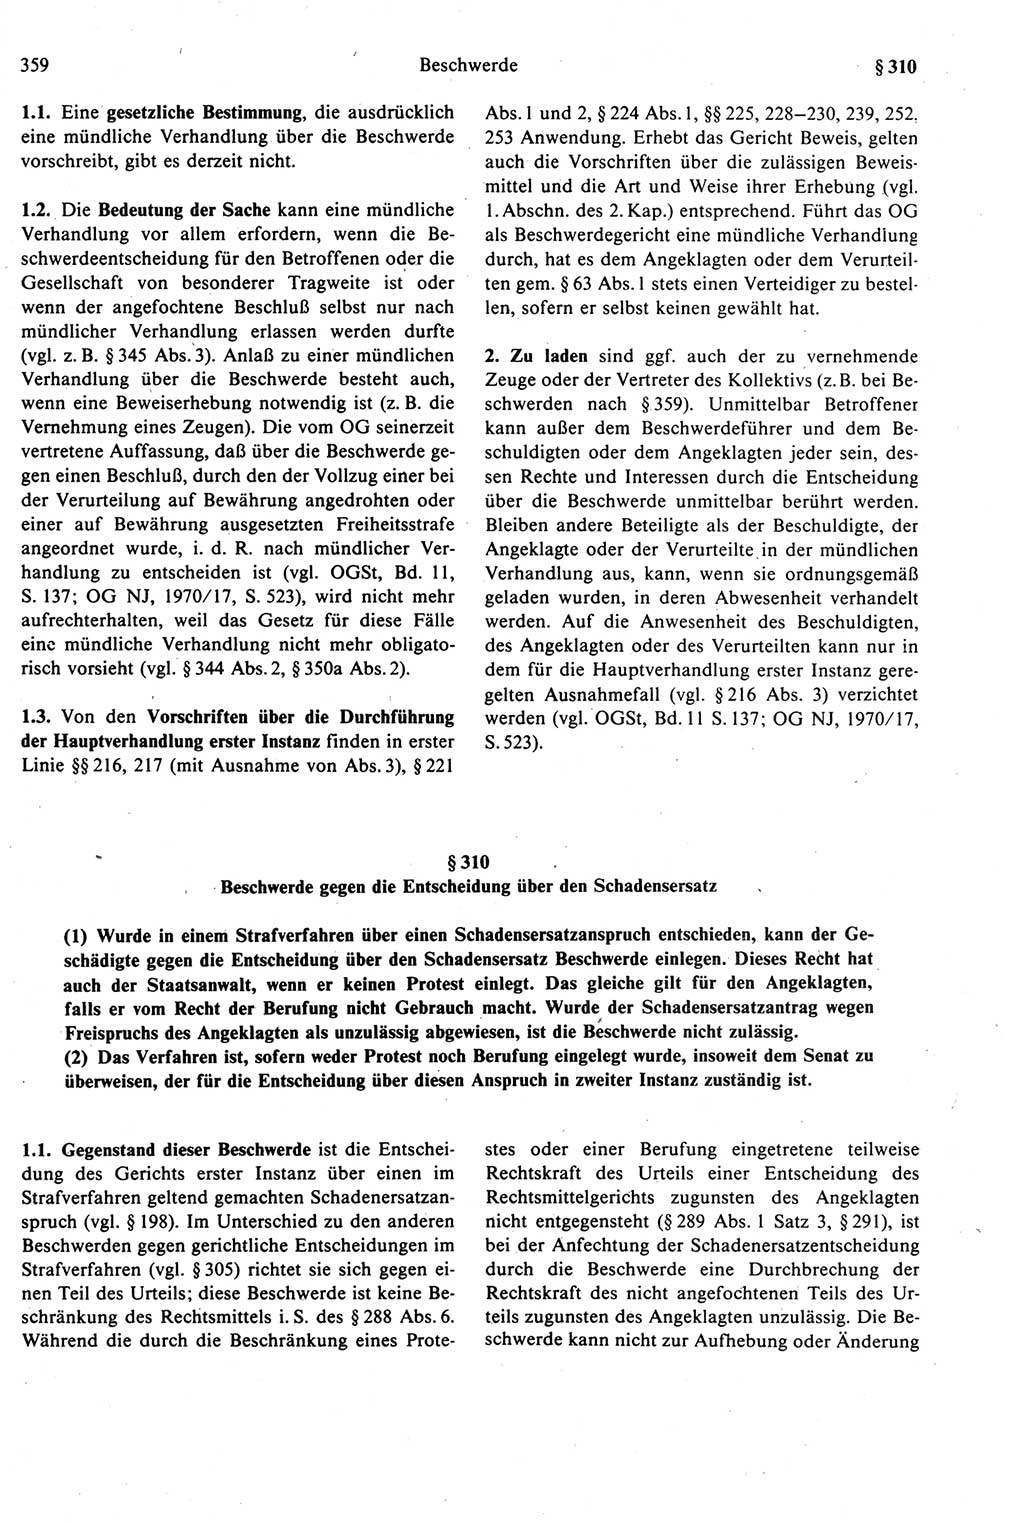 Strafprozeßrecht der DDR (Deutsche Demokratische Republik), Kommentar zur Strafprozeßordnung (StPO) 1989, Seite 359 (Strafprozeßr. DDR Komm. StPO 1989, S. 359)